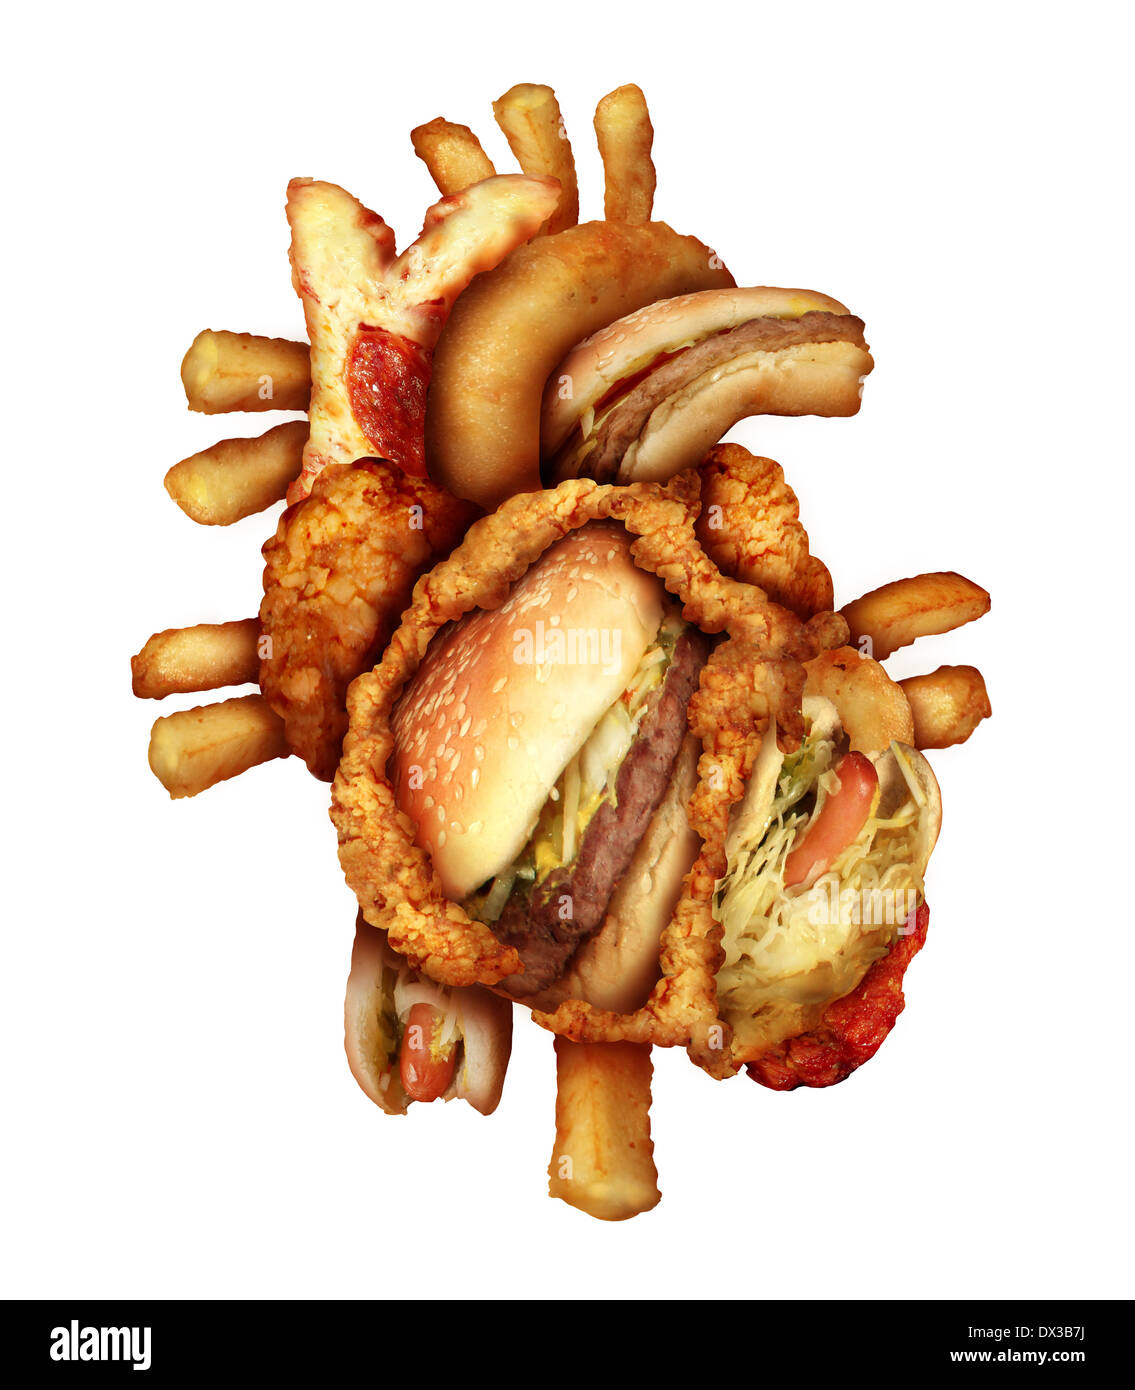 Gefährliche Herz Ernährung und ungesunde Lebensmittel Konzept mit Herz-Kreislauf-Anatomie Orgel gemacht von ungesund und gebratene Fastfood Stockfoto